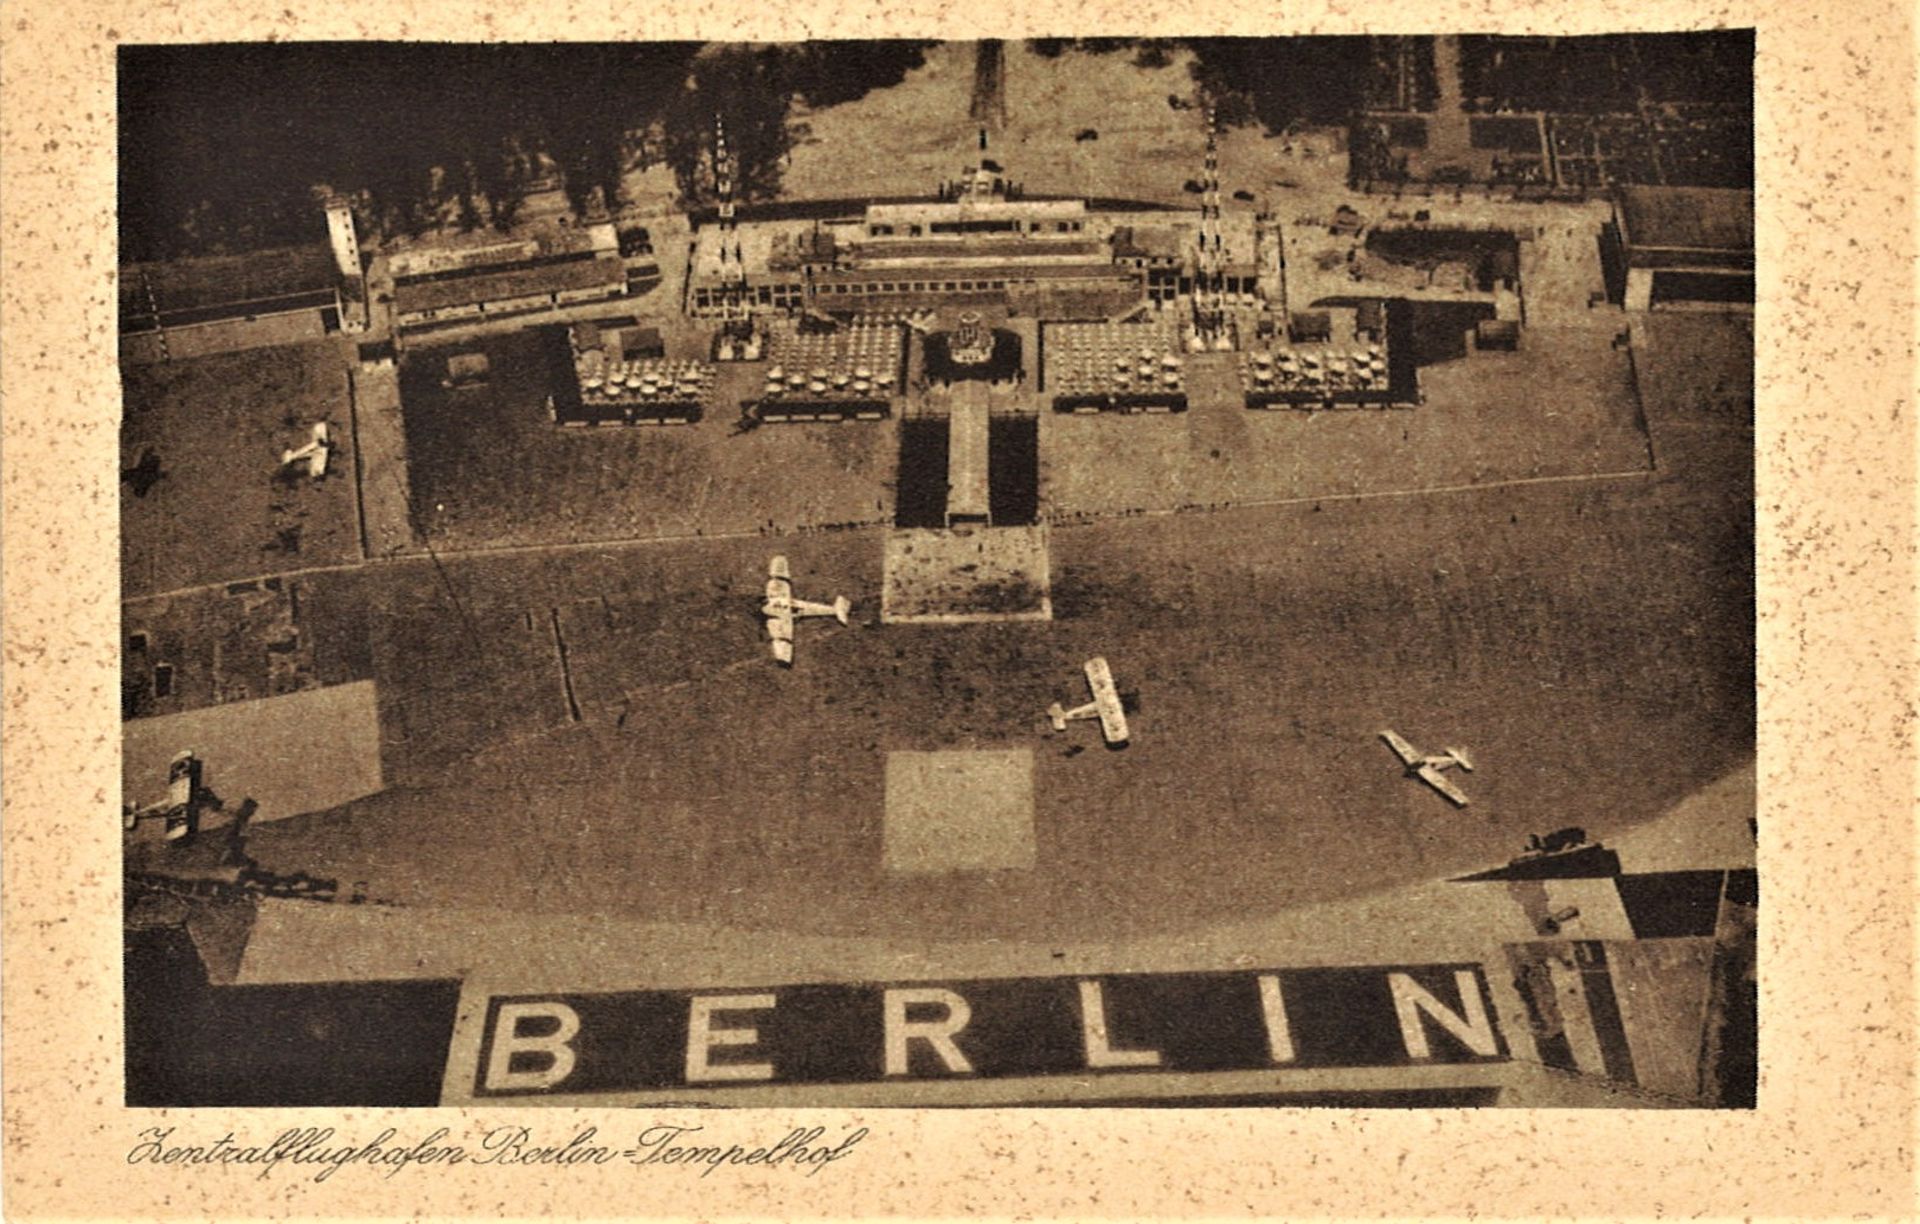 seltene Postkarte Berlin Zentralflughafen Berlin-Tempelhof. Sehr frühe Karte, ungelaufen